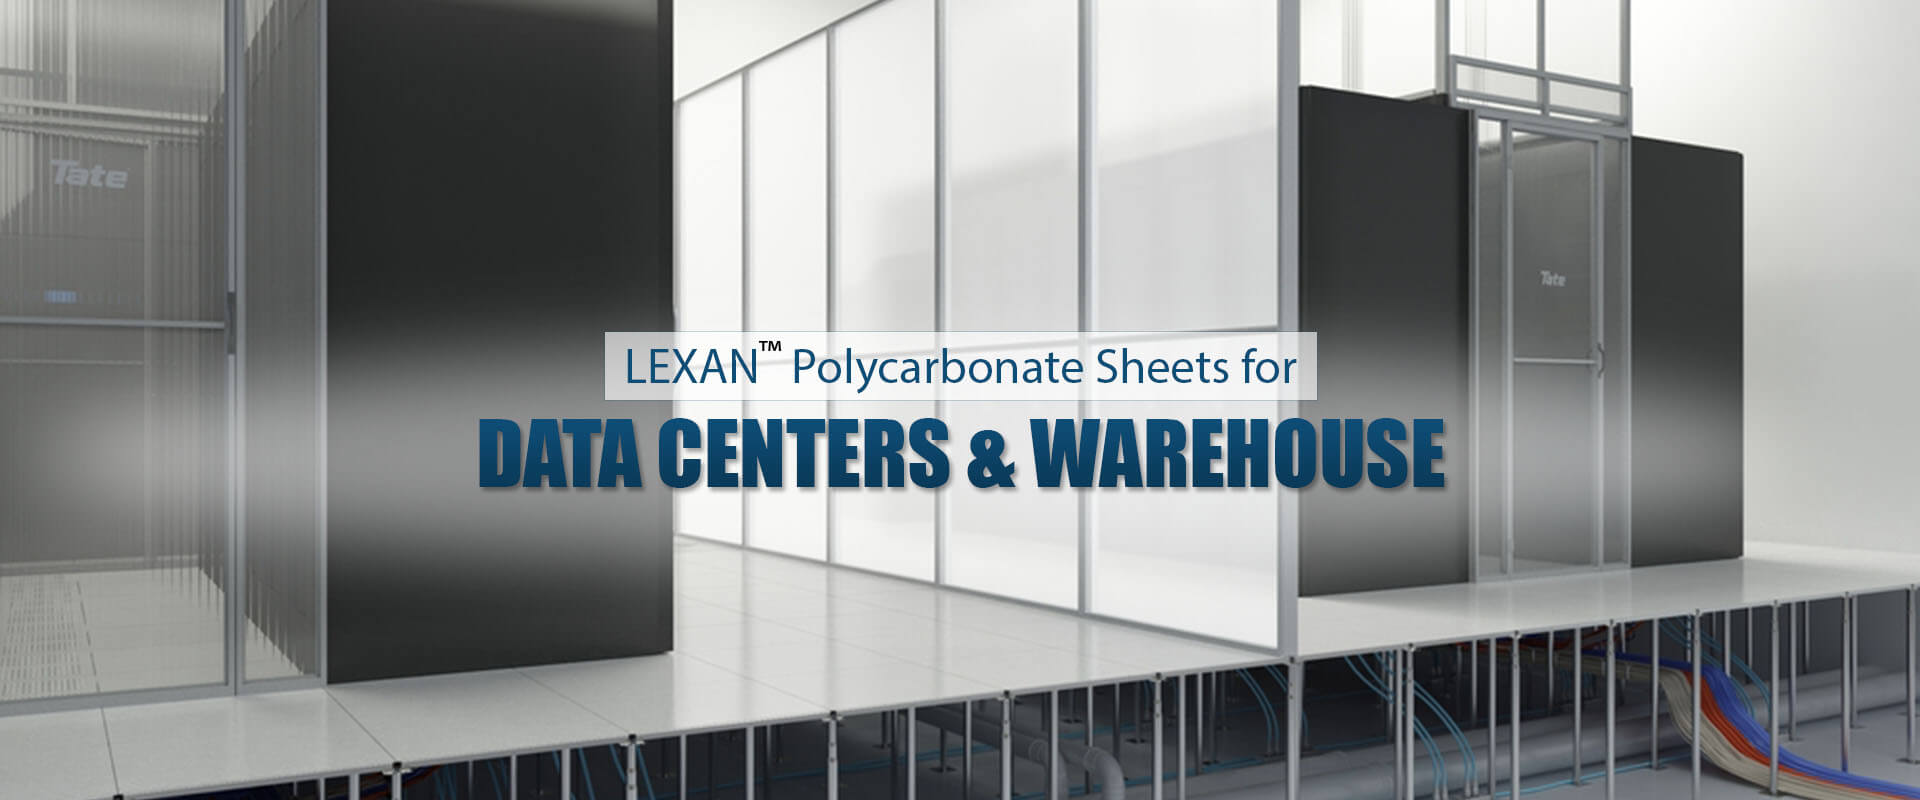 LEXAN™ Polycarbonate Sheets